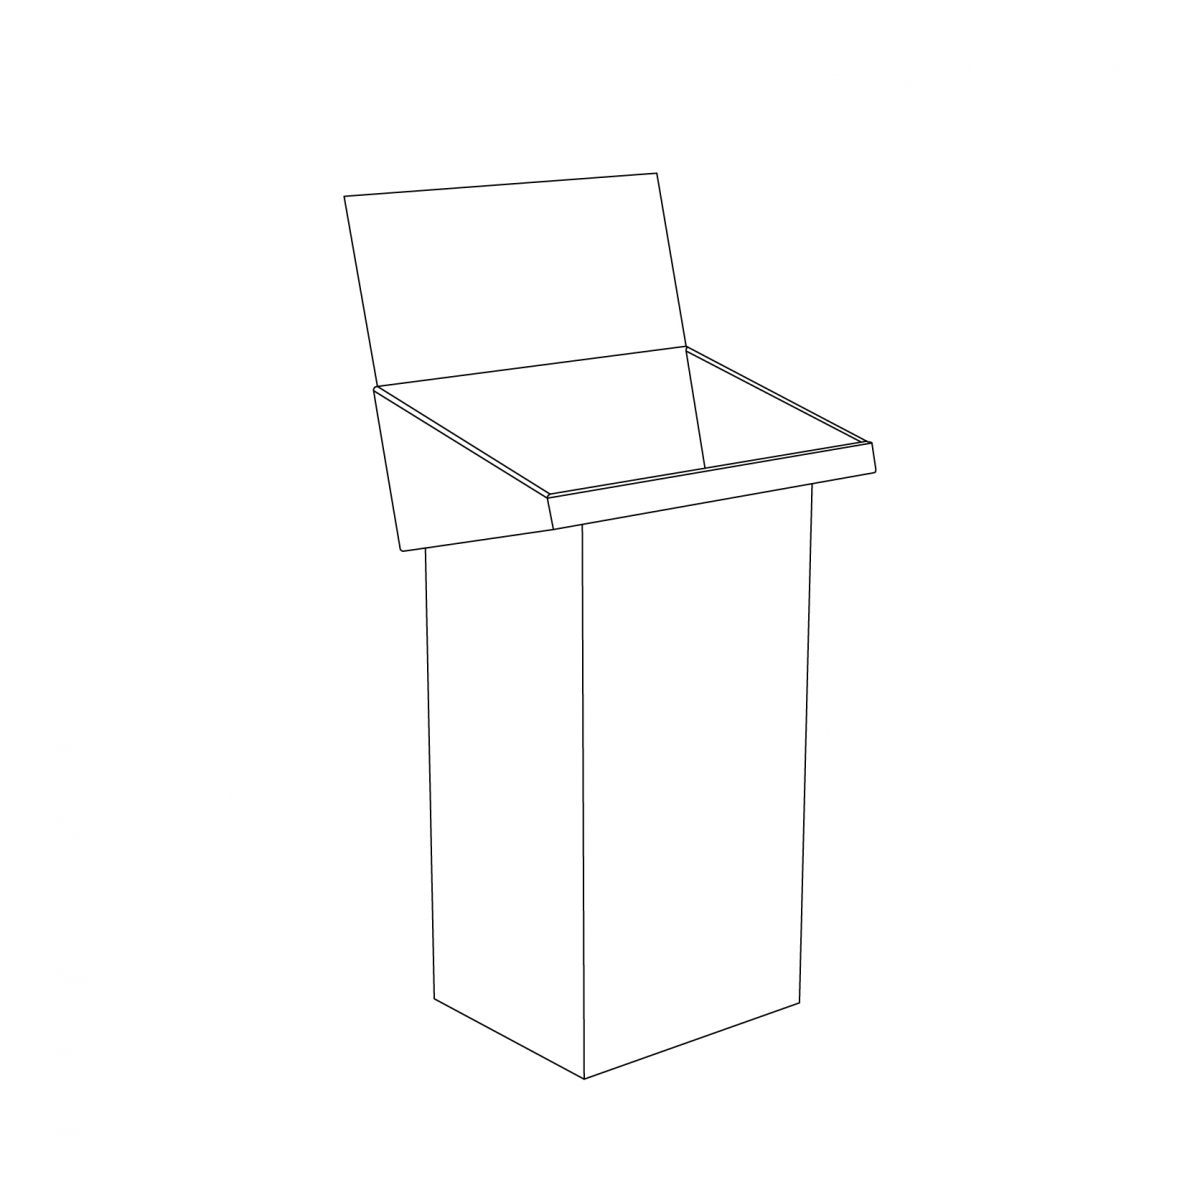 Benne en carton (dump bin) avec en-tête et présentoir - tracé